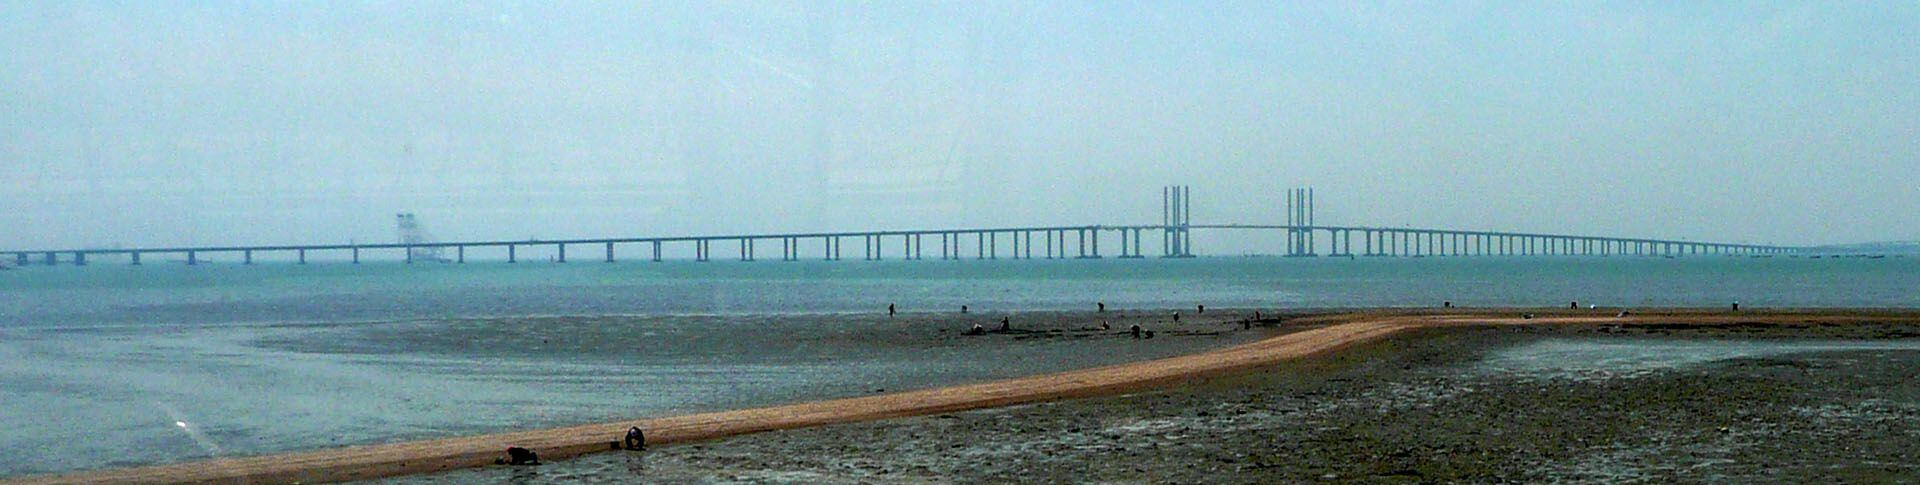 Puente Qingdao Haiwan